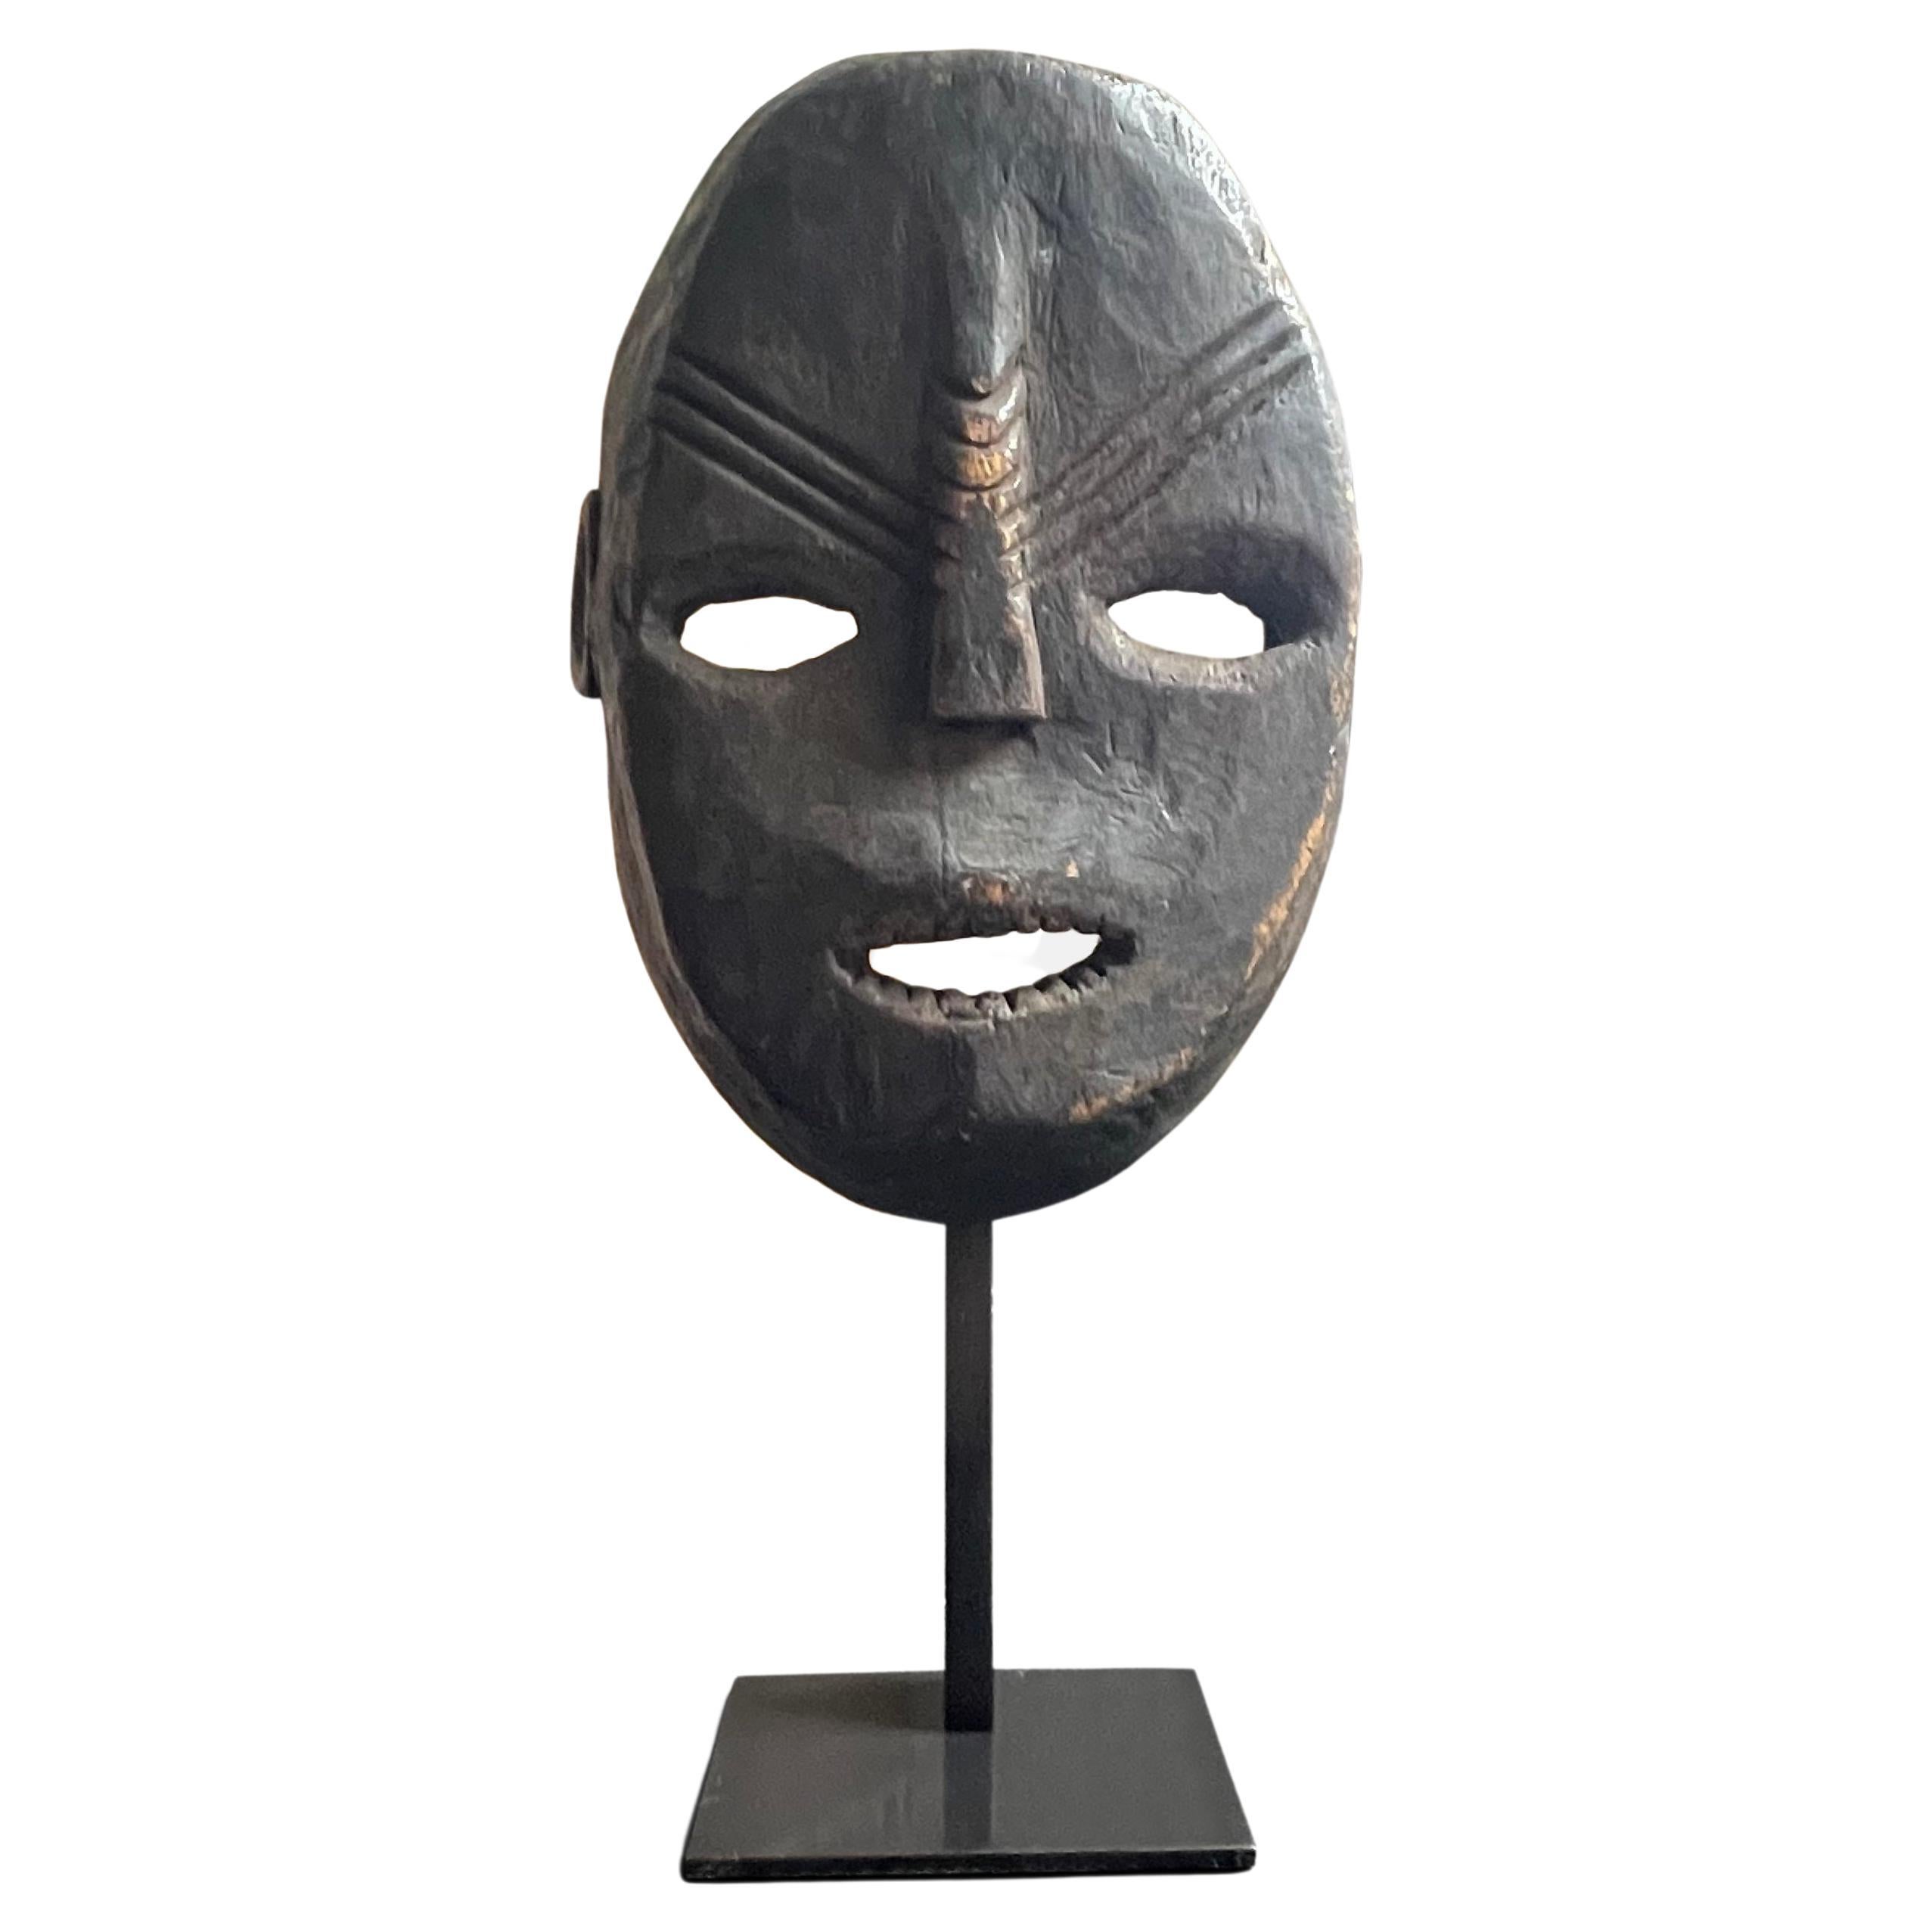 Masque tribal Congolese pour les rituels d'initiation, début du 20e siècle